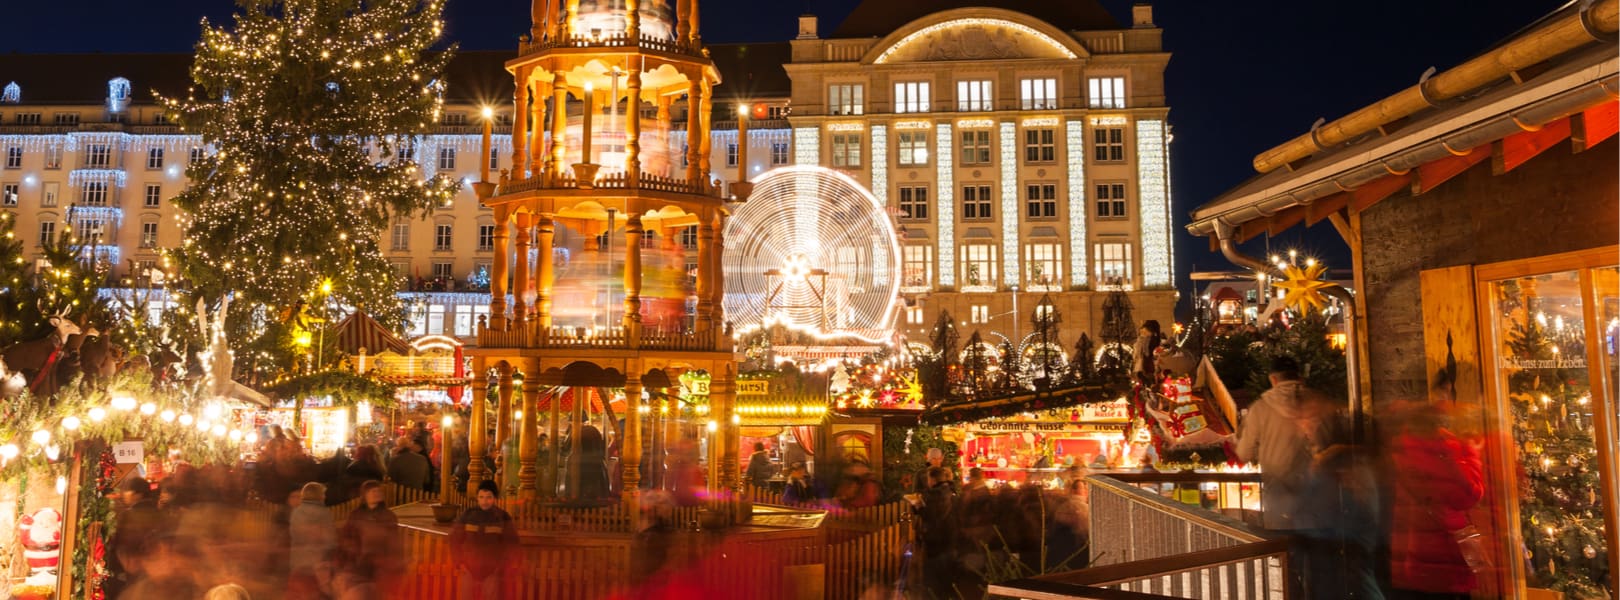 Blick auf den Dresdener Weihnachtsmarkt